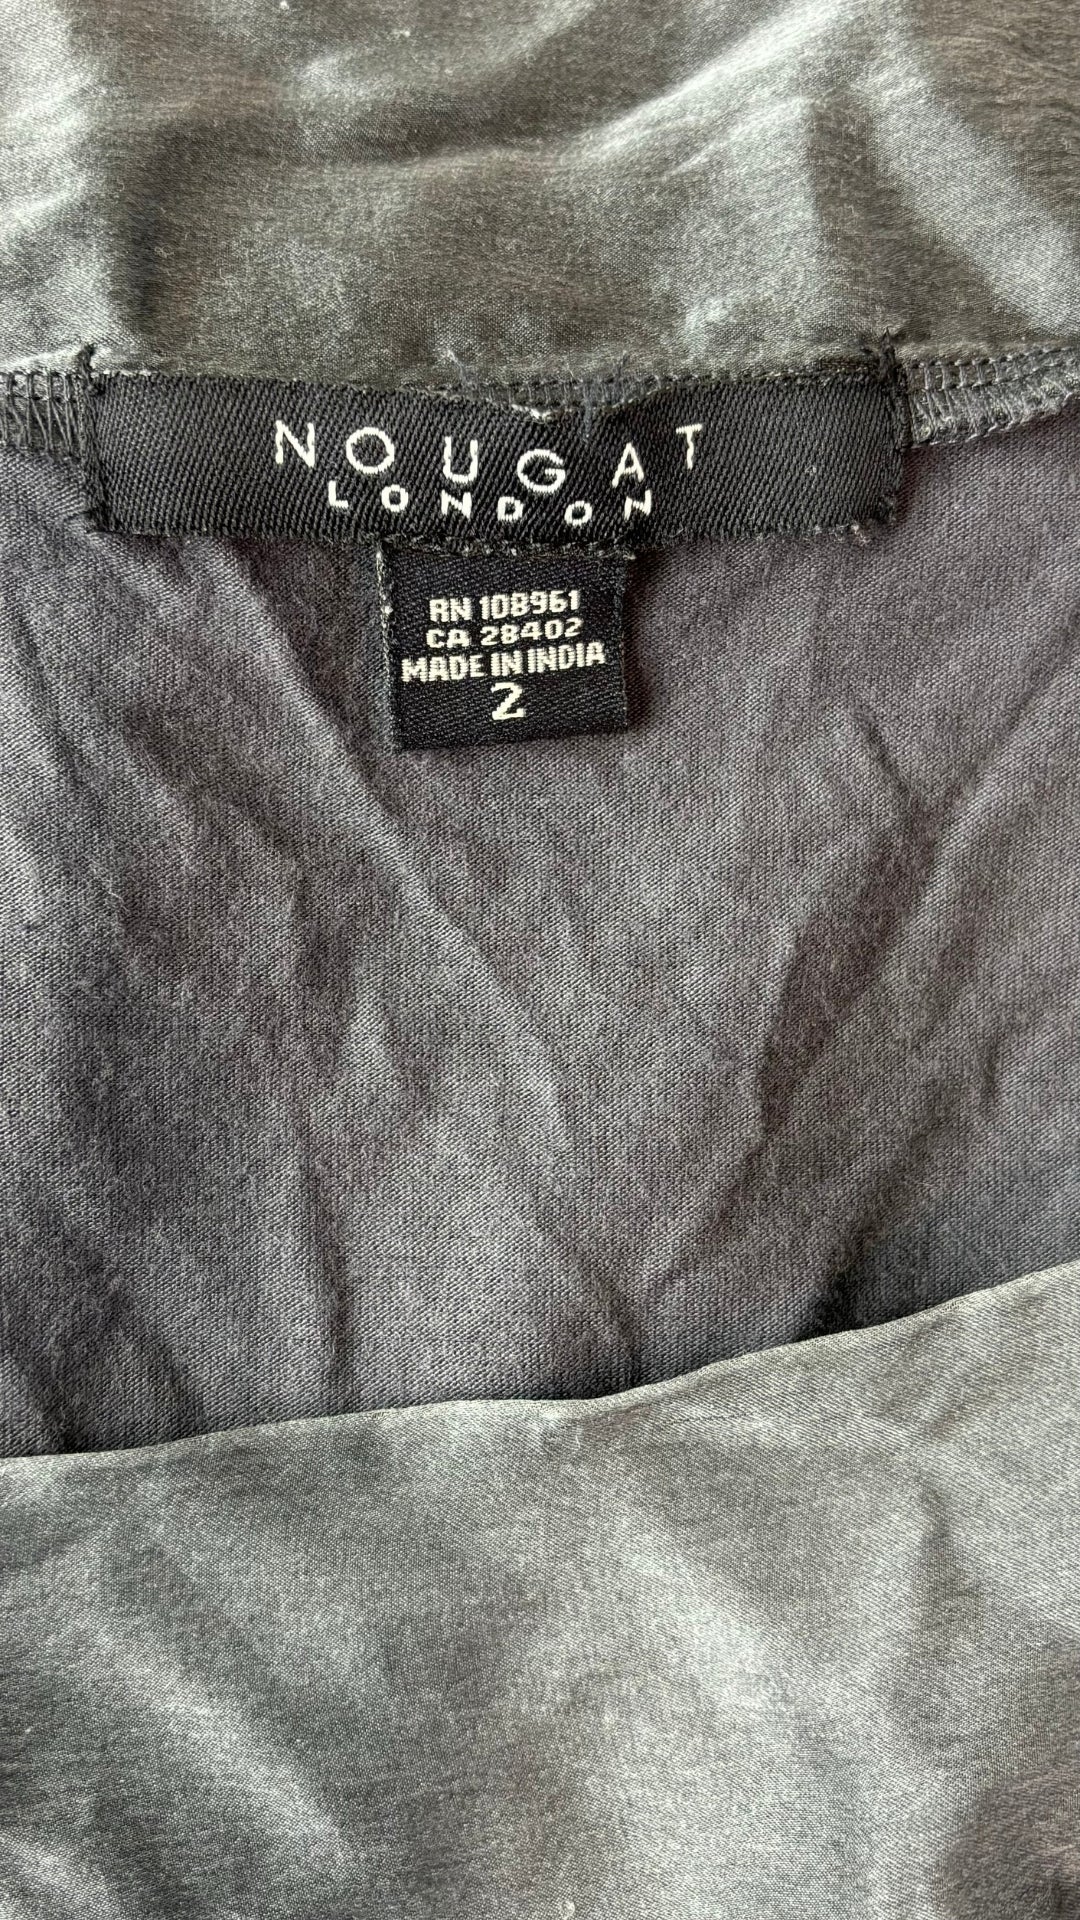 Chandail encolure carrée modal et soie Nougat London, taille 2 (small). Vue de l'étiquette de marque et taille.